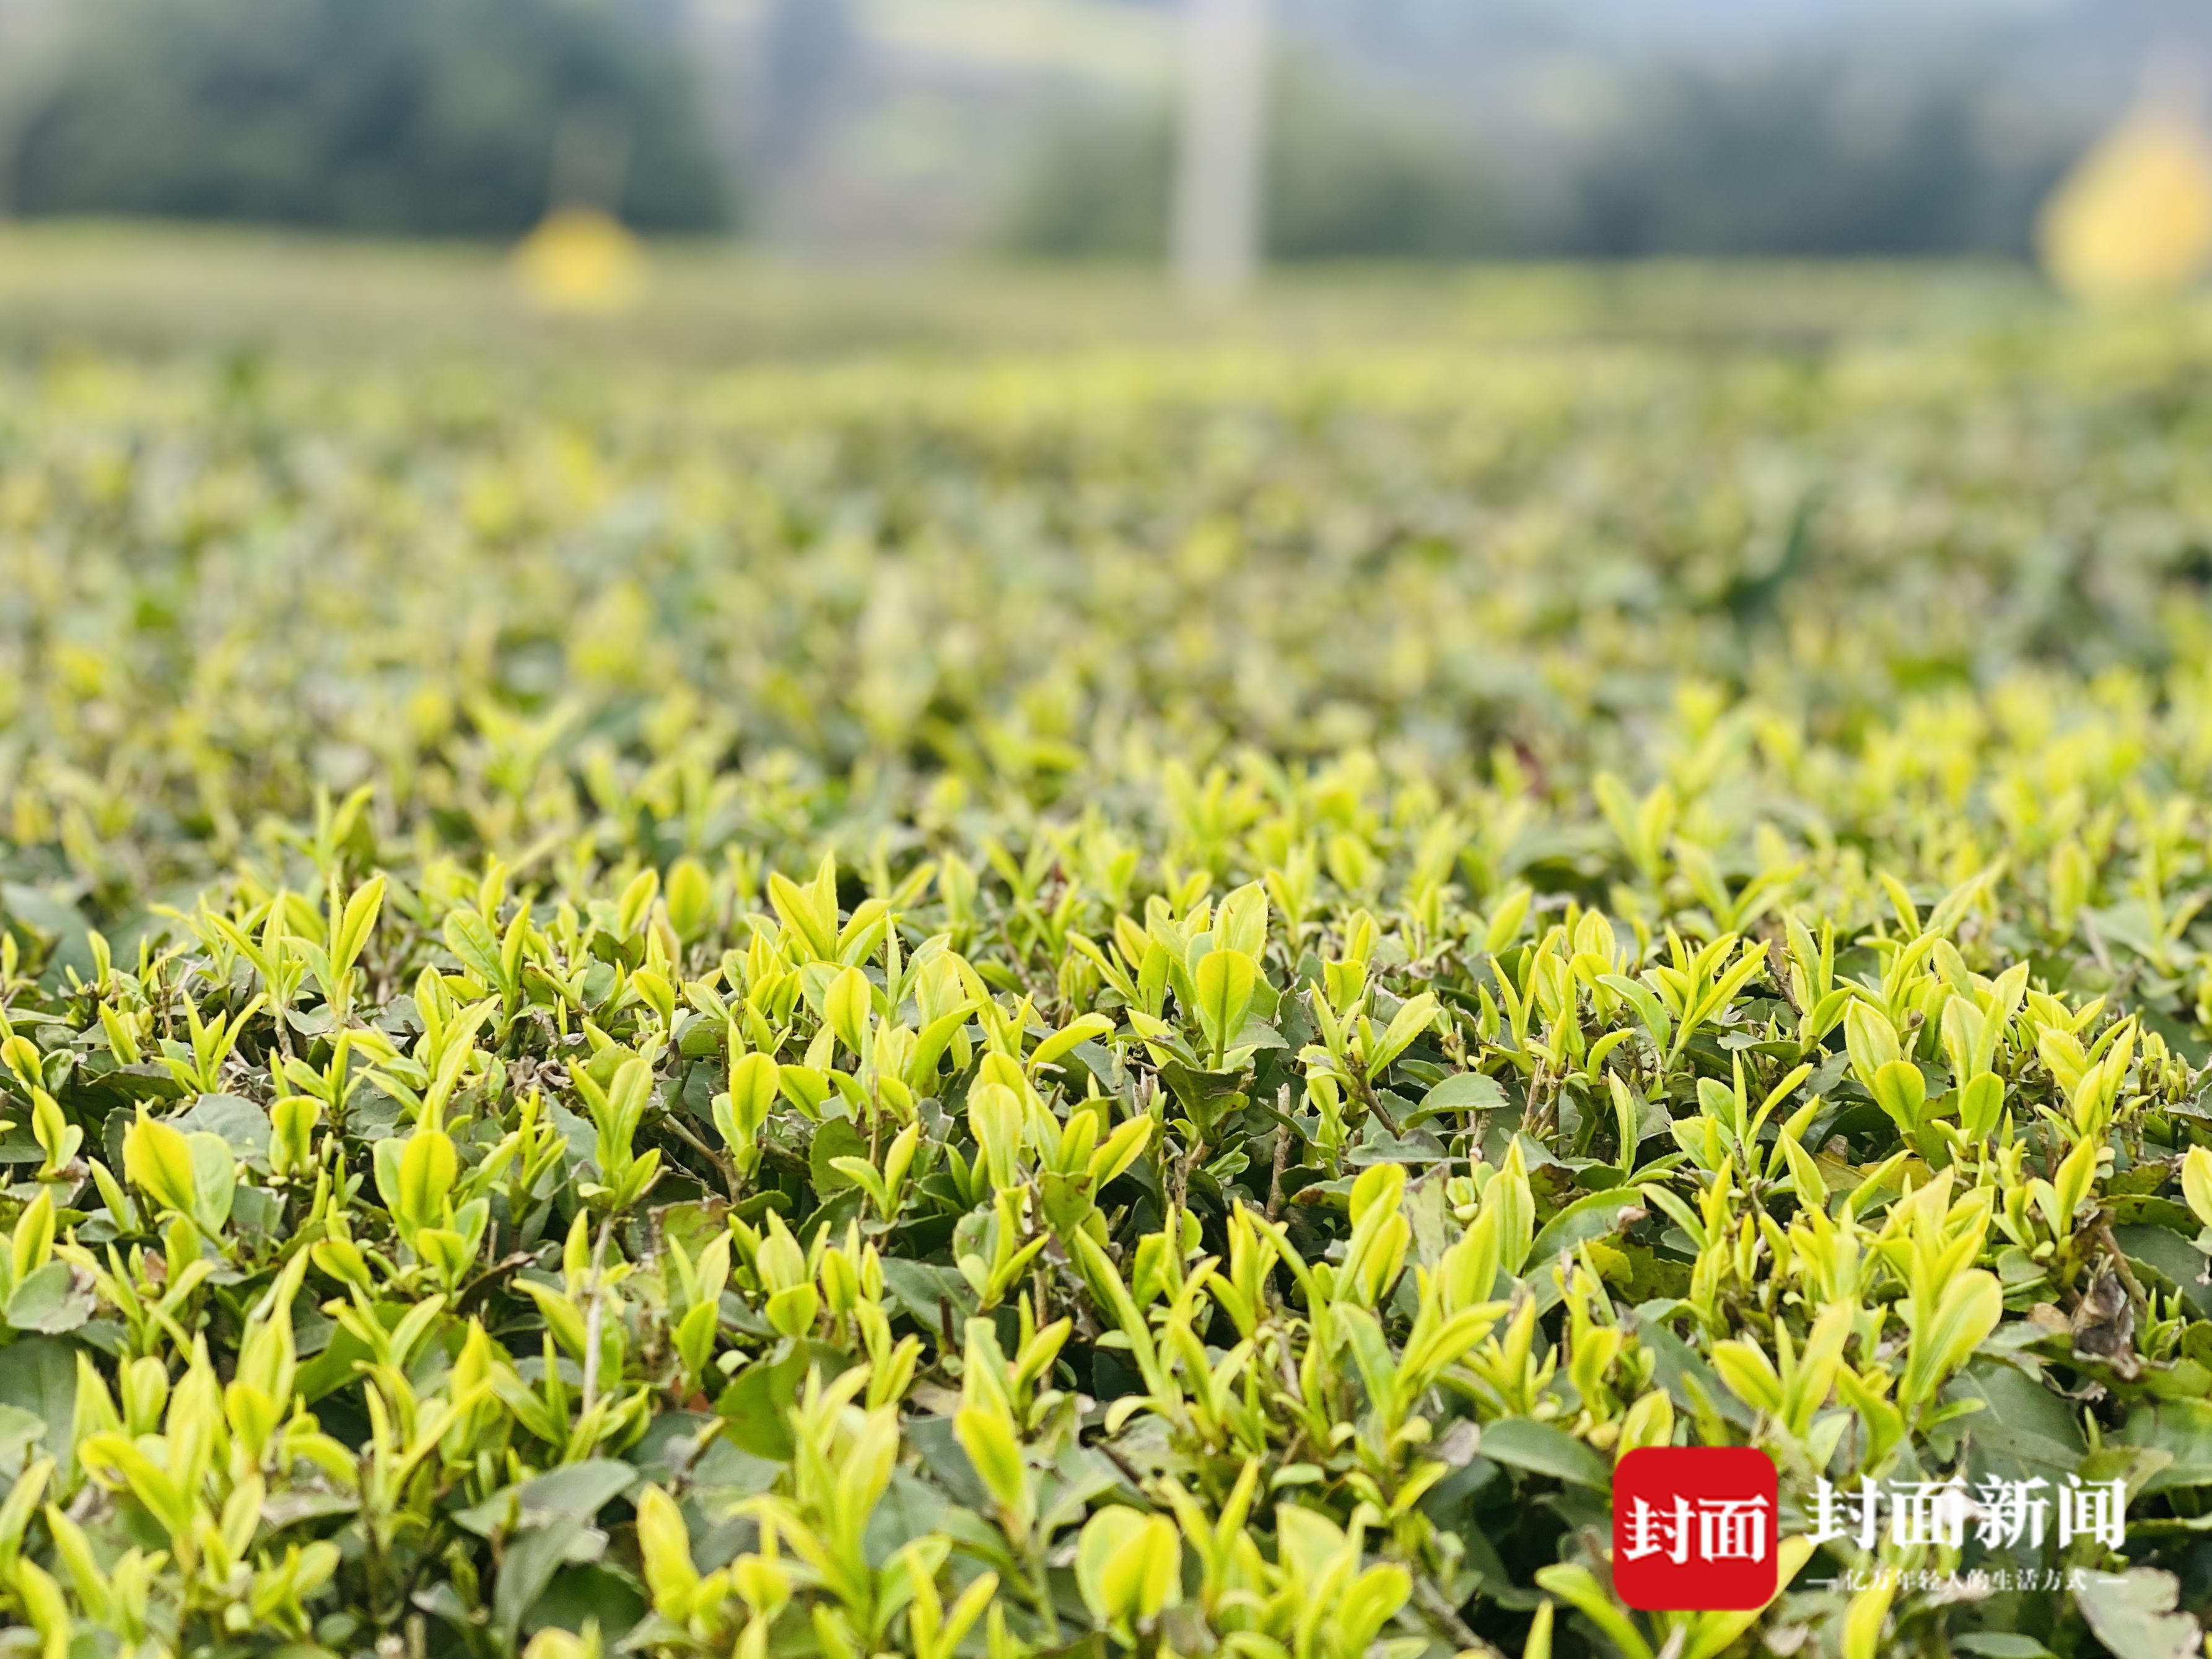 从一芽春茶到20万亩茶园四川荣县茶产业步入黄金时代